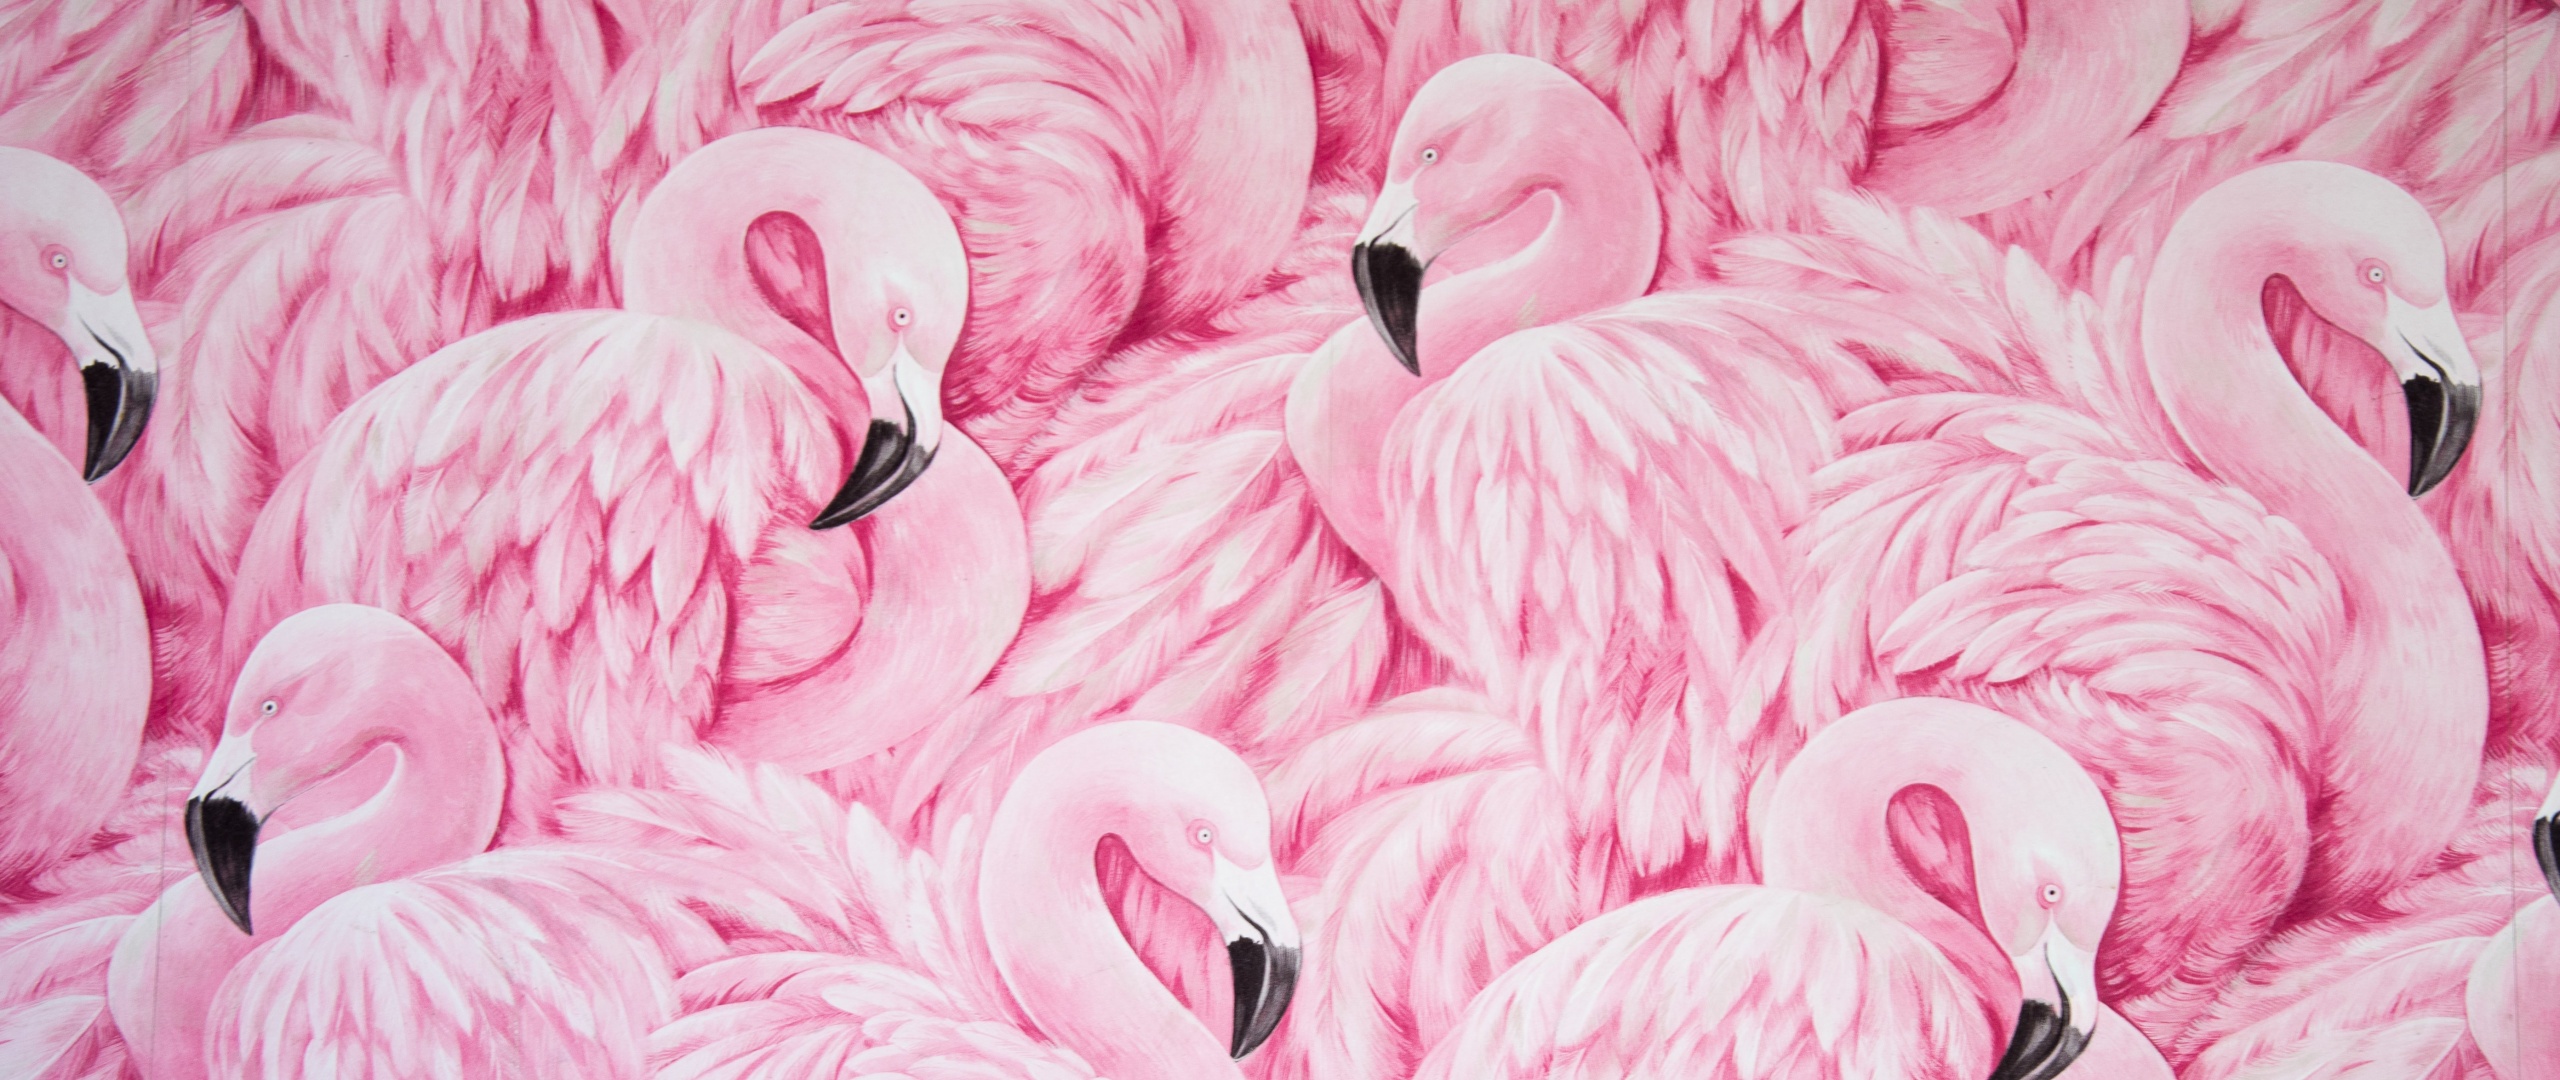 48493 Flamingo Wallpaper Images Stock Photos  Vectors  Shutterstock